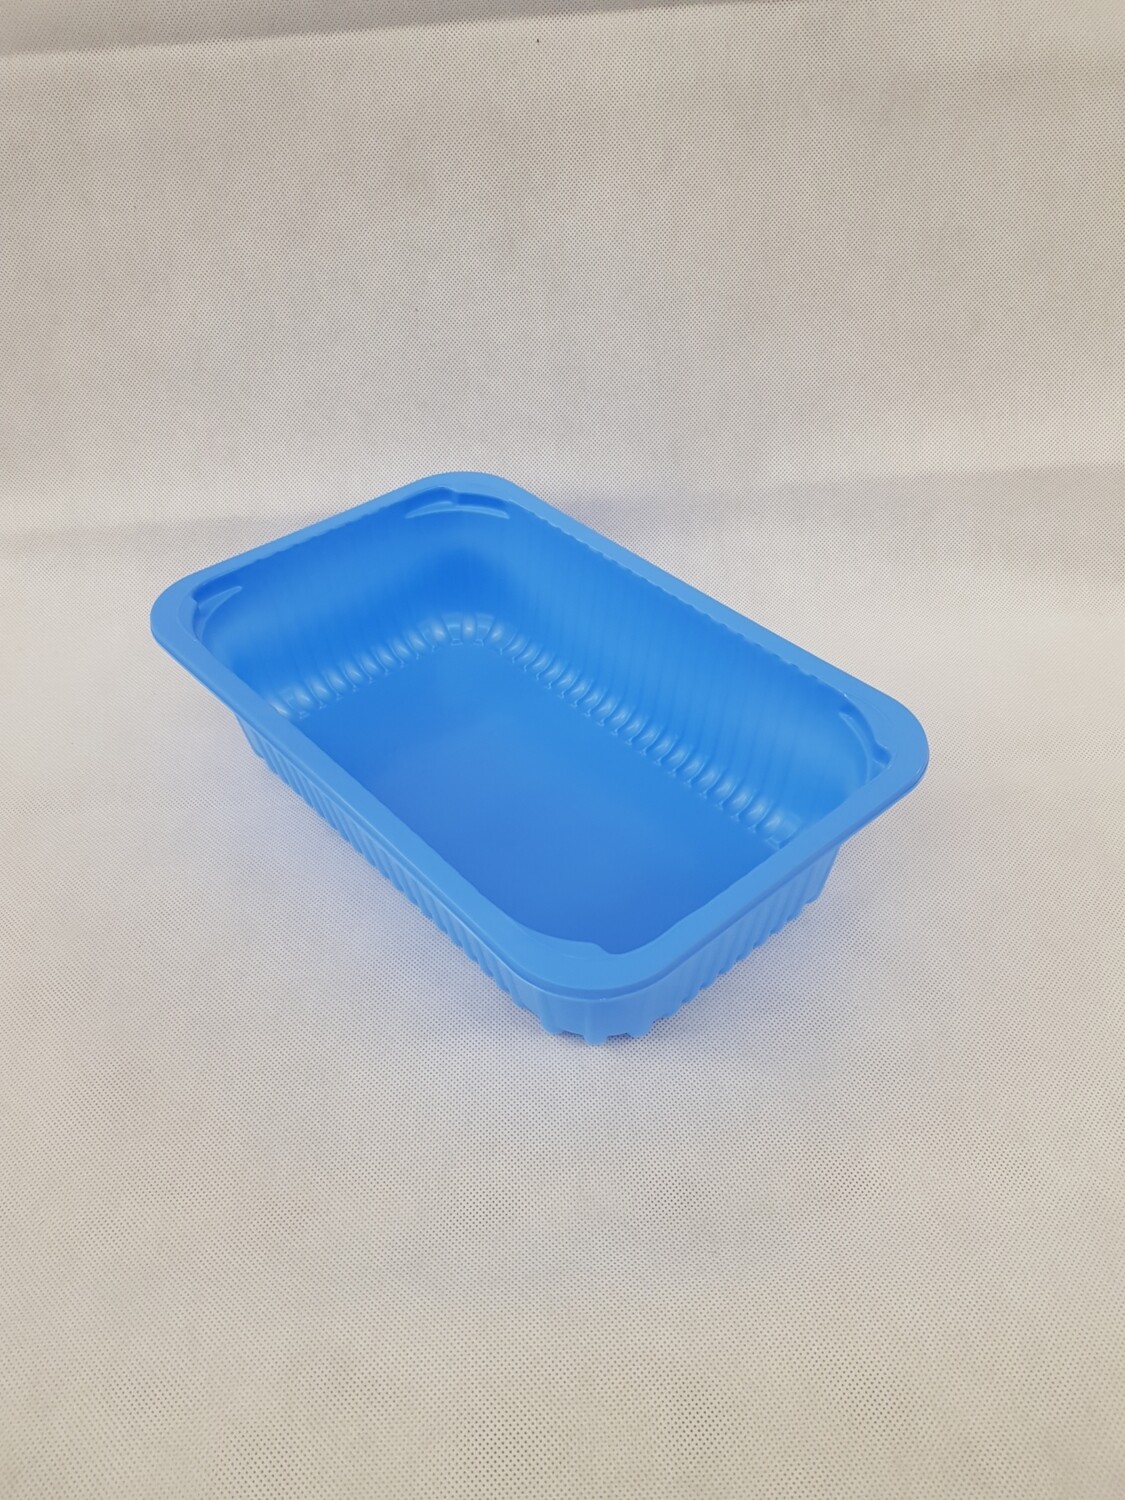 Plastic schaal 275x175x70 PP hellblauw 1,5kg - 198 stuks per doos